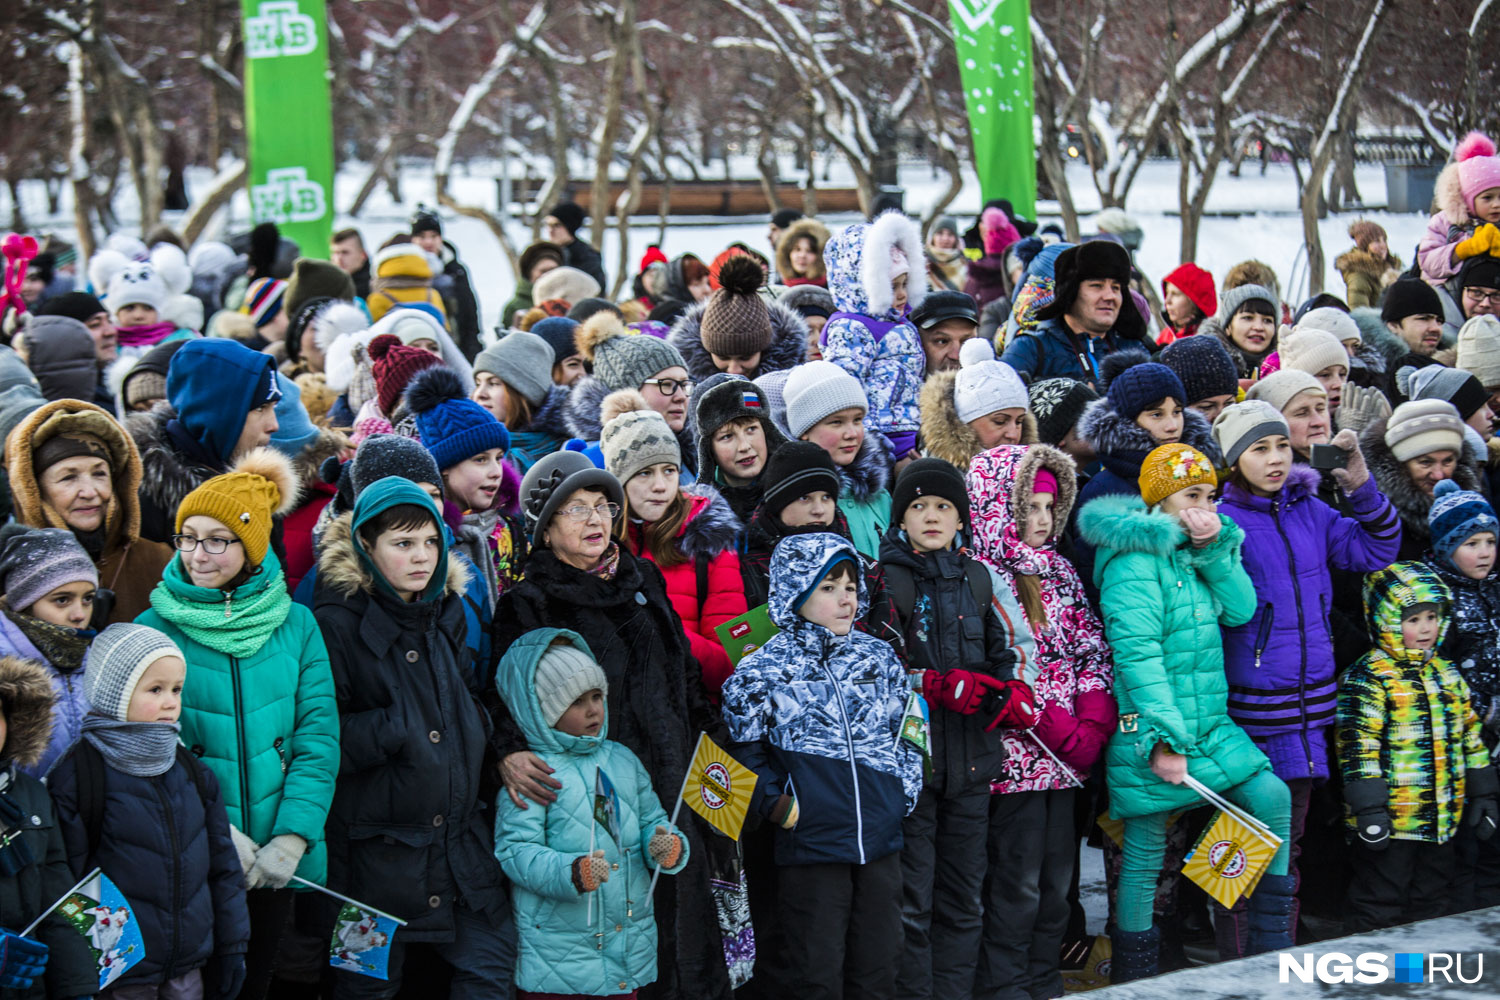 Посмотреть концерт на улице в мороз собралось больше сотни новосибирцев, в основном дети